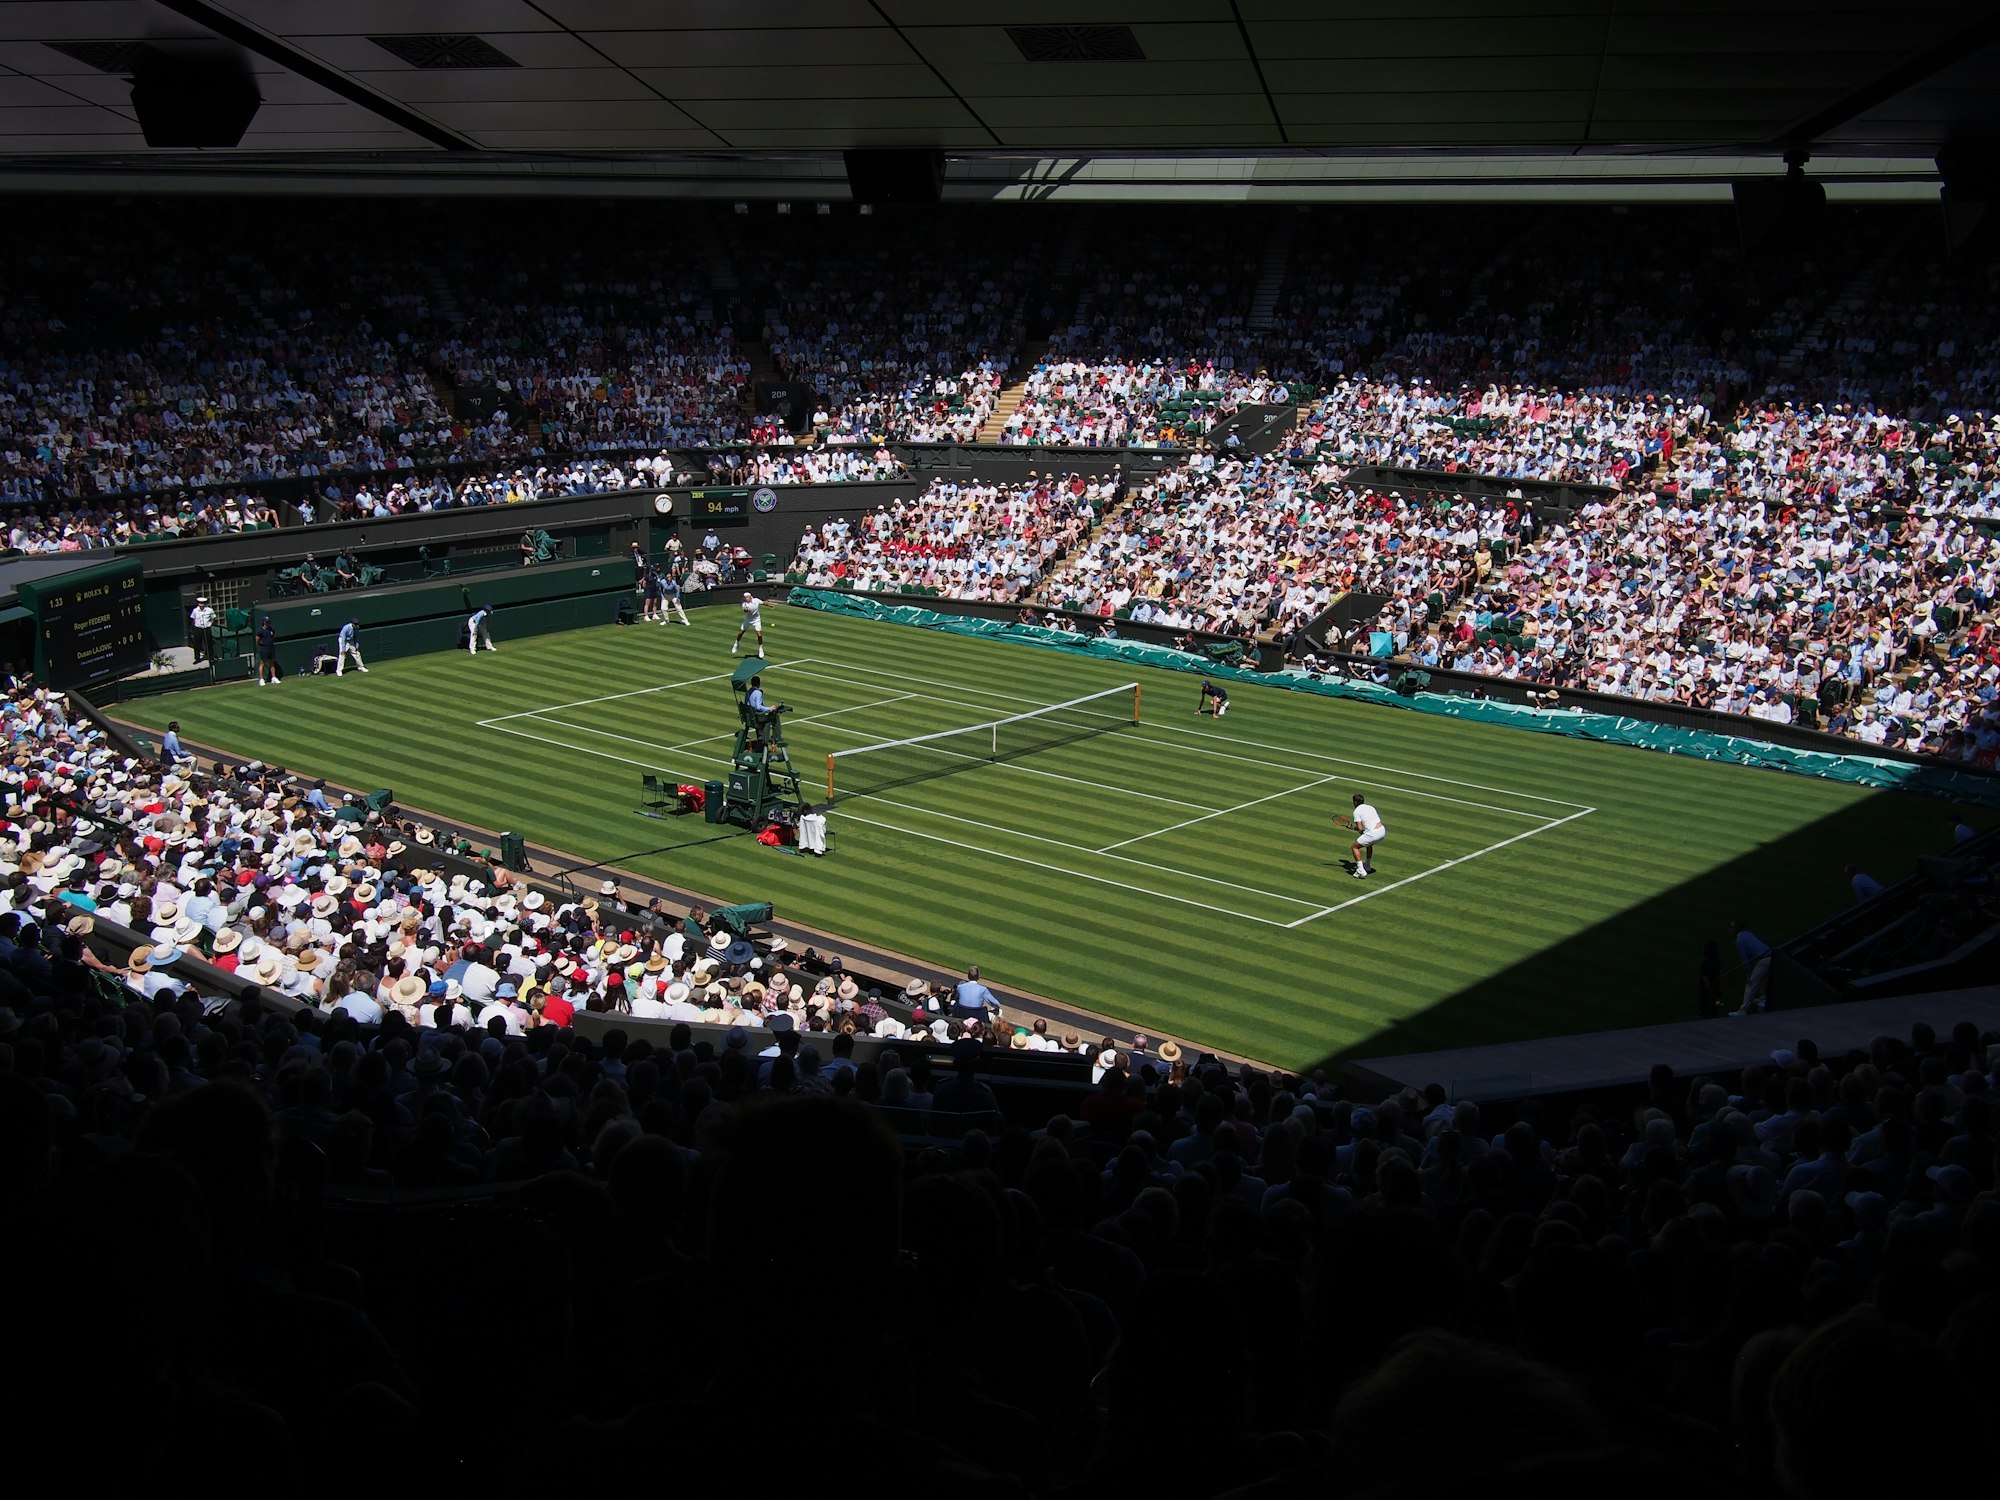 Wimbledon tennisballen leggen 81.000 kilometer af